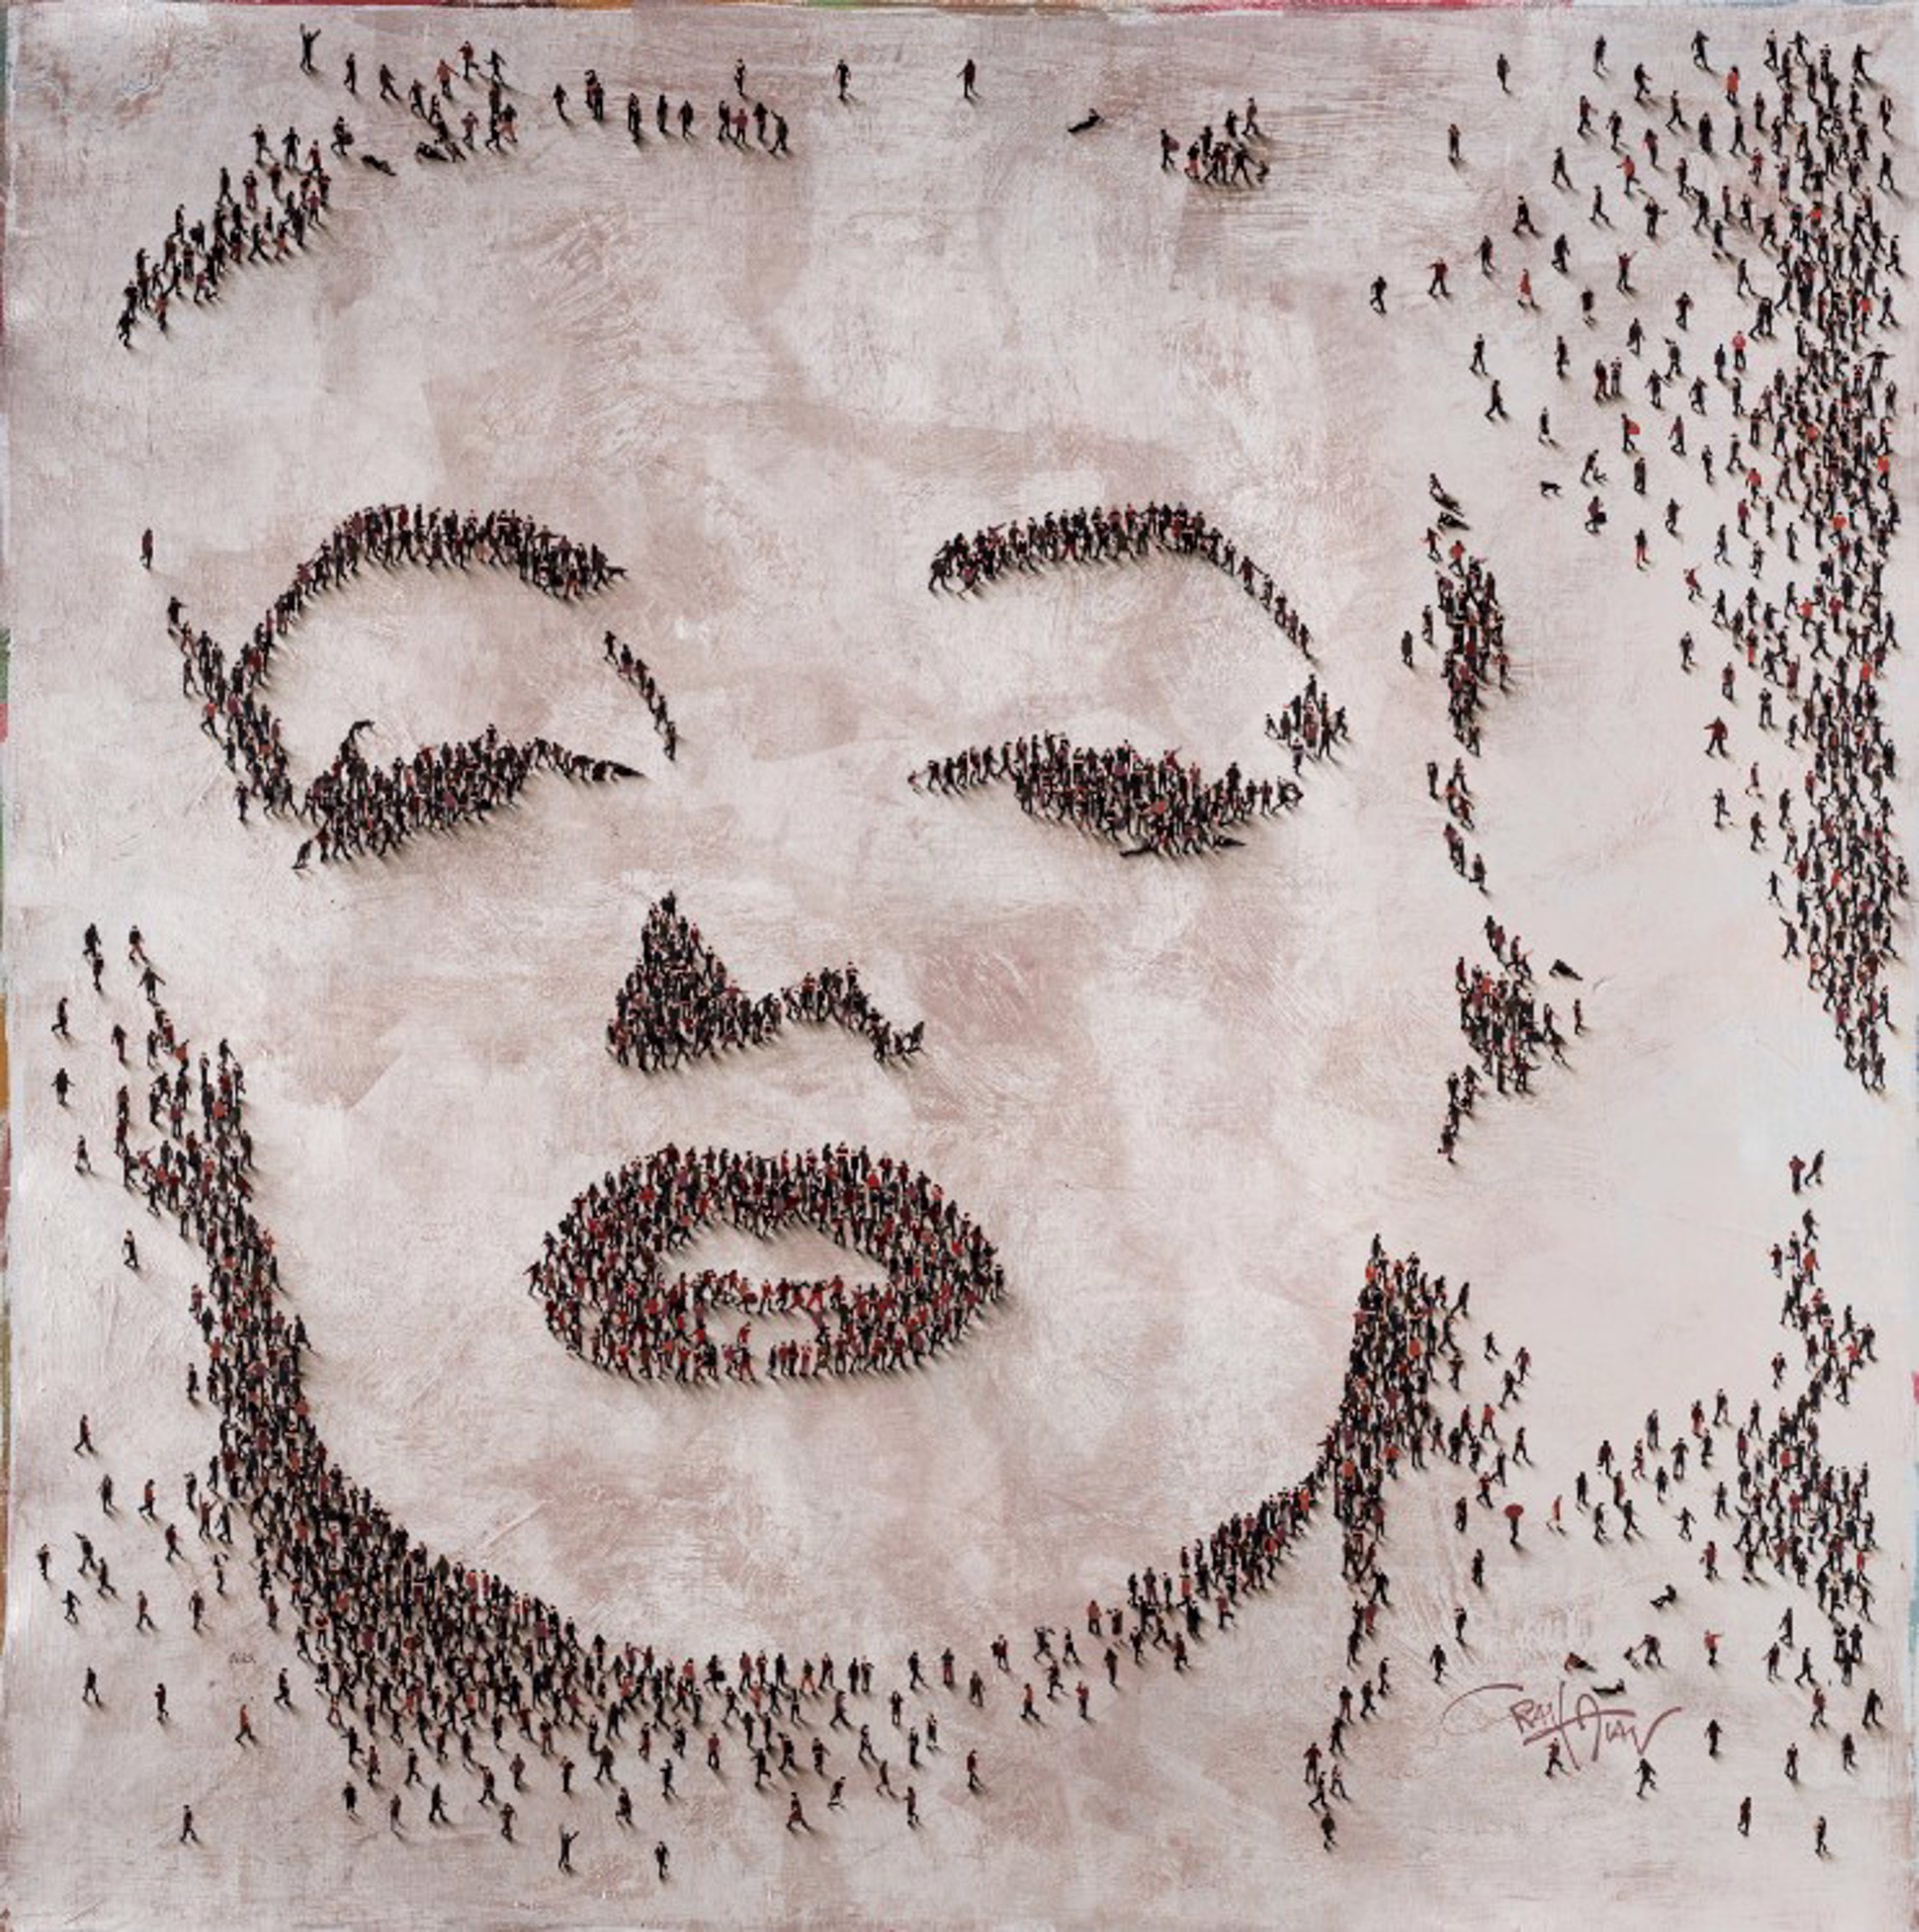 Marilyn, After Dark by Craig Alan, Populus Figurative